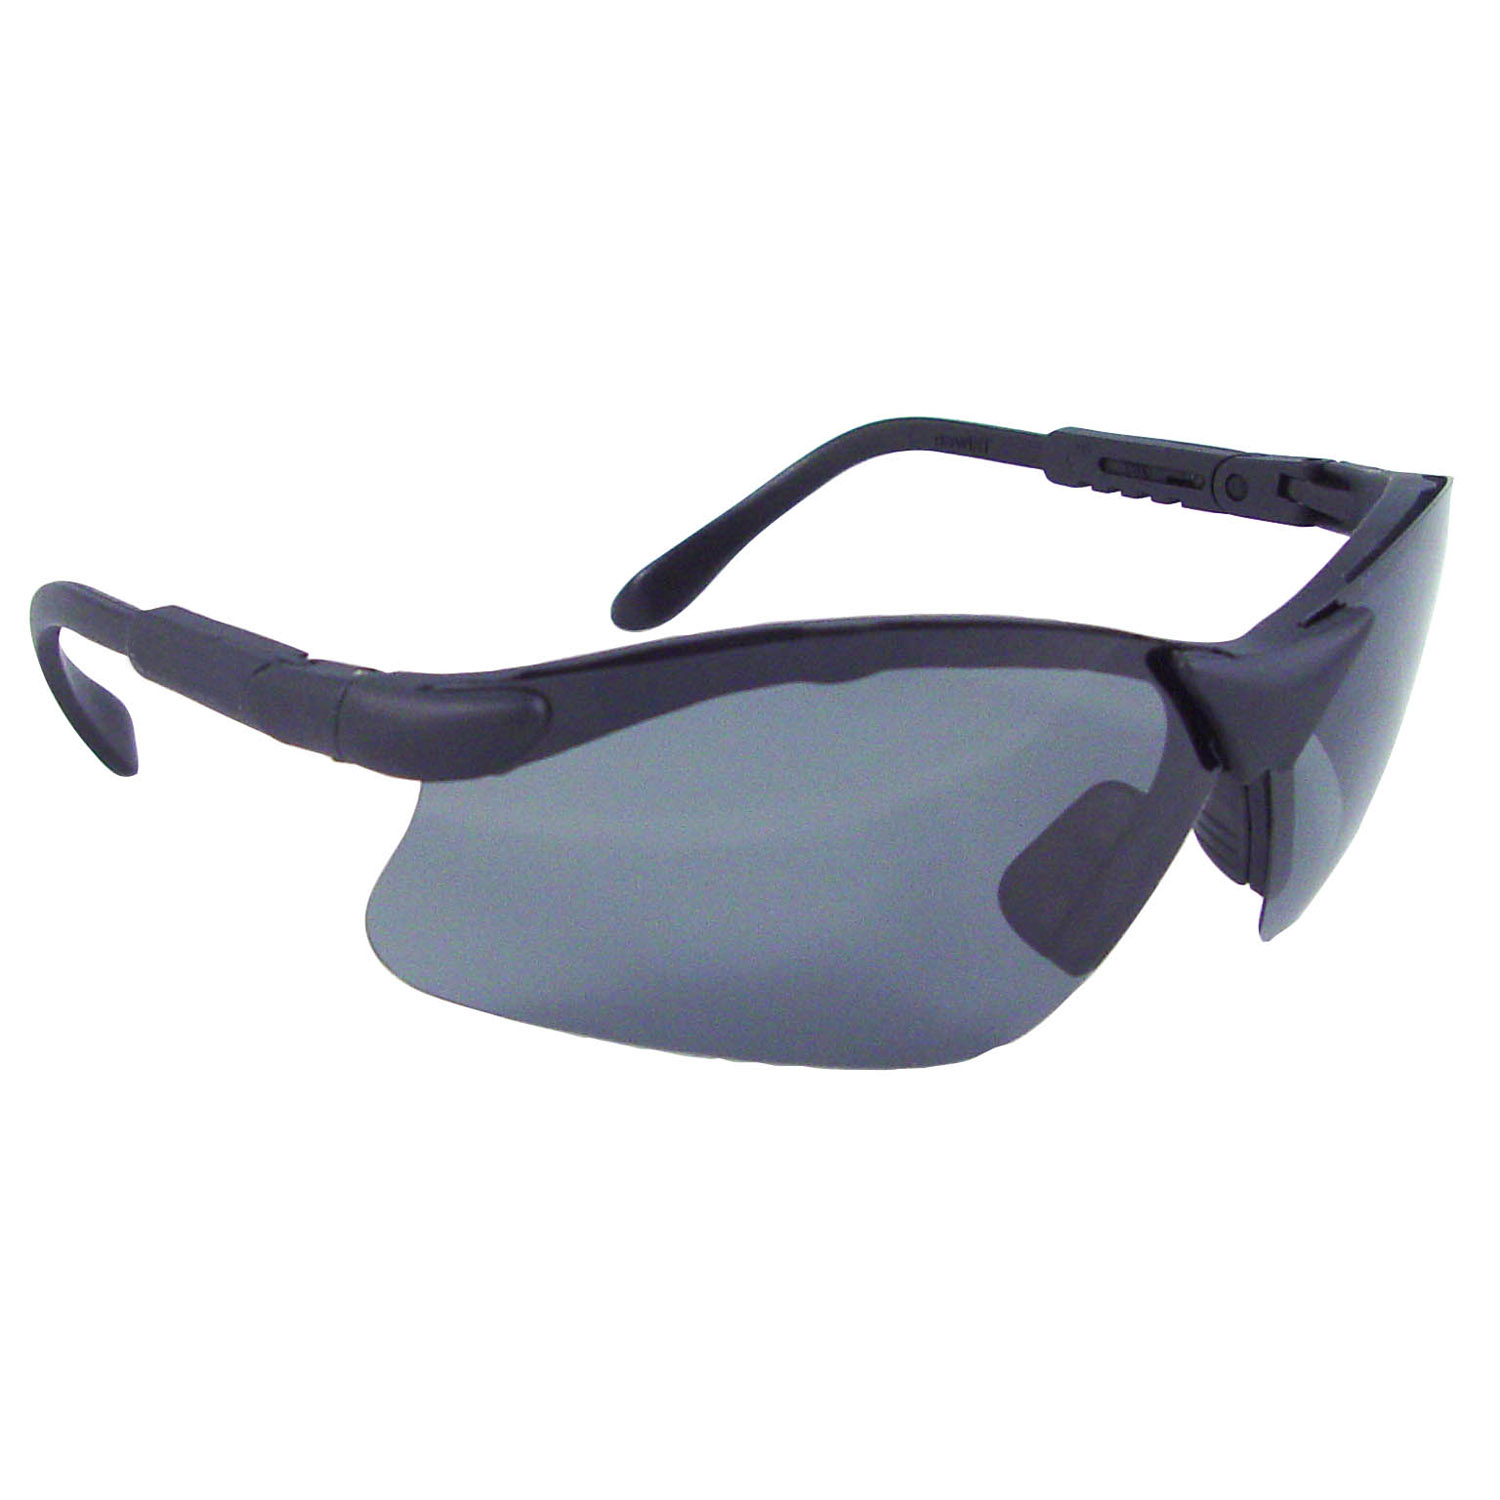 Revelation™ Safety Eyewear - Black Frame - Polarized Smoke Lens